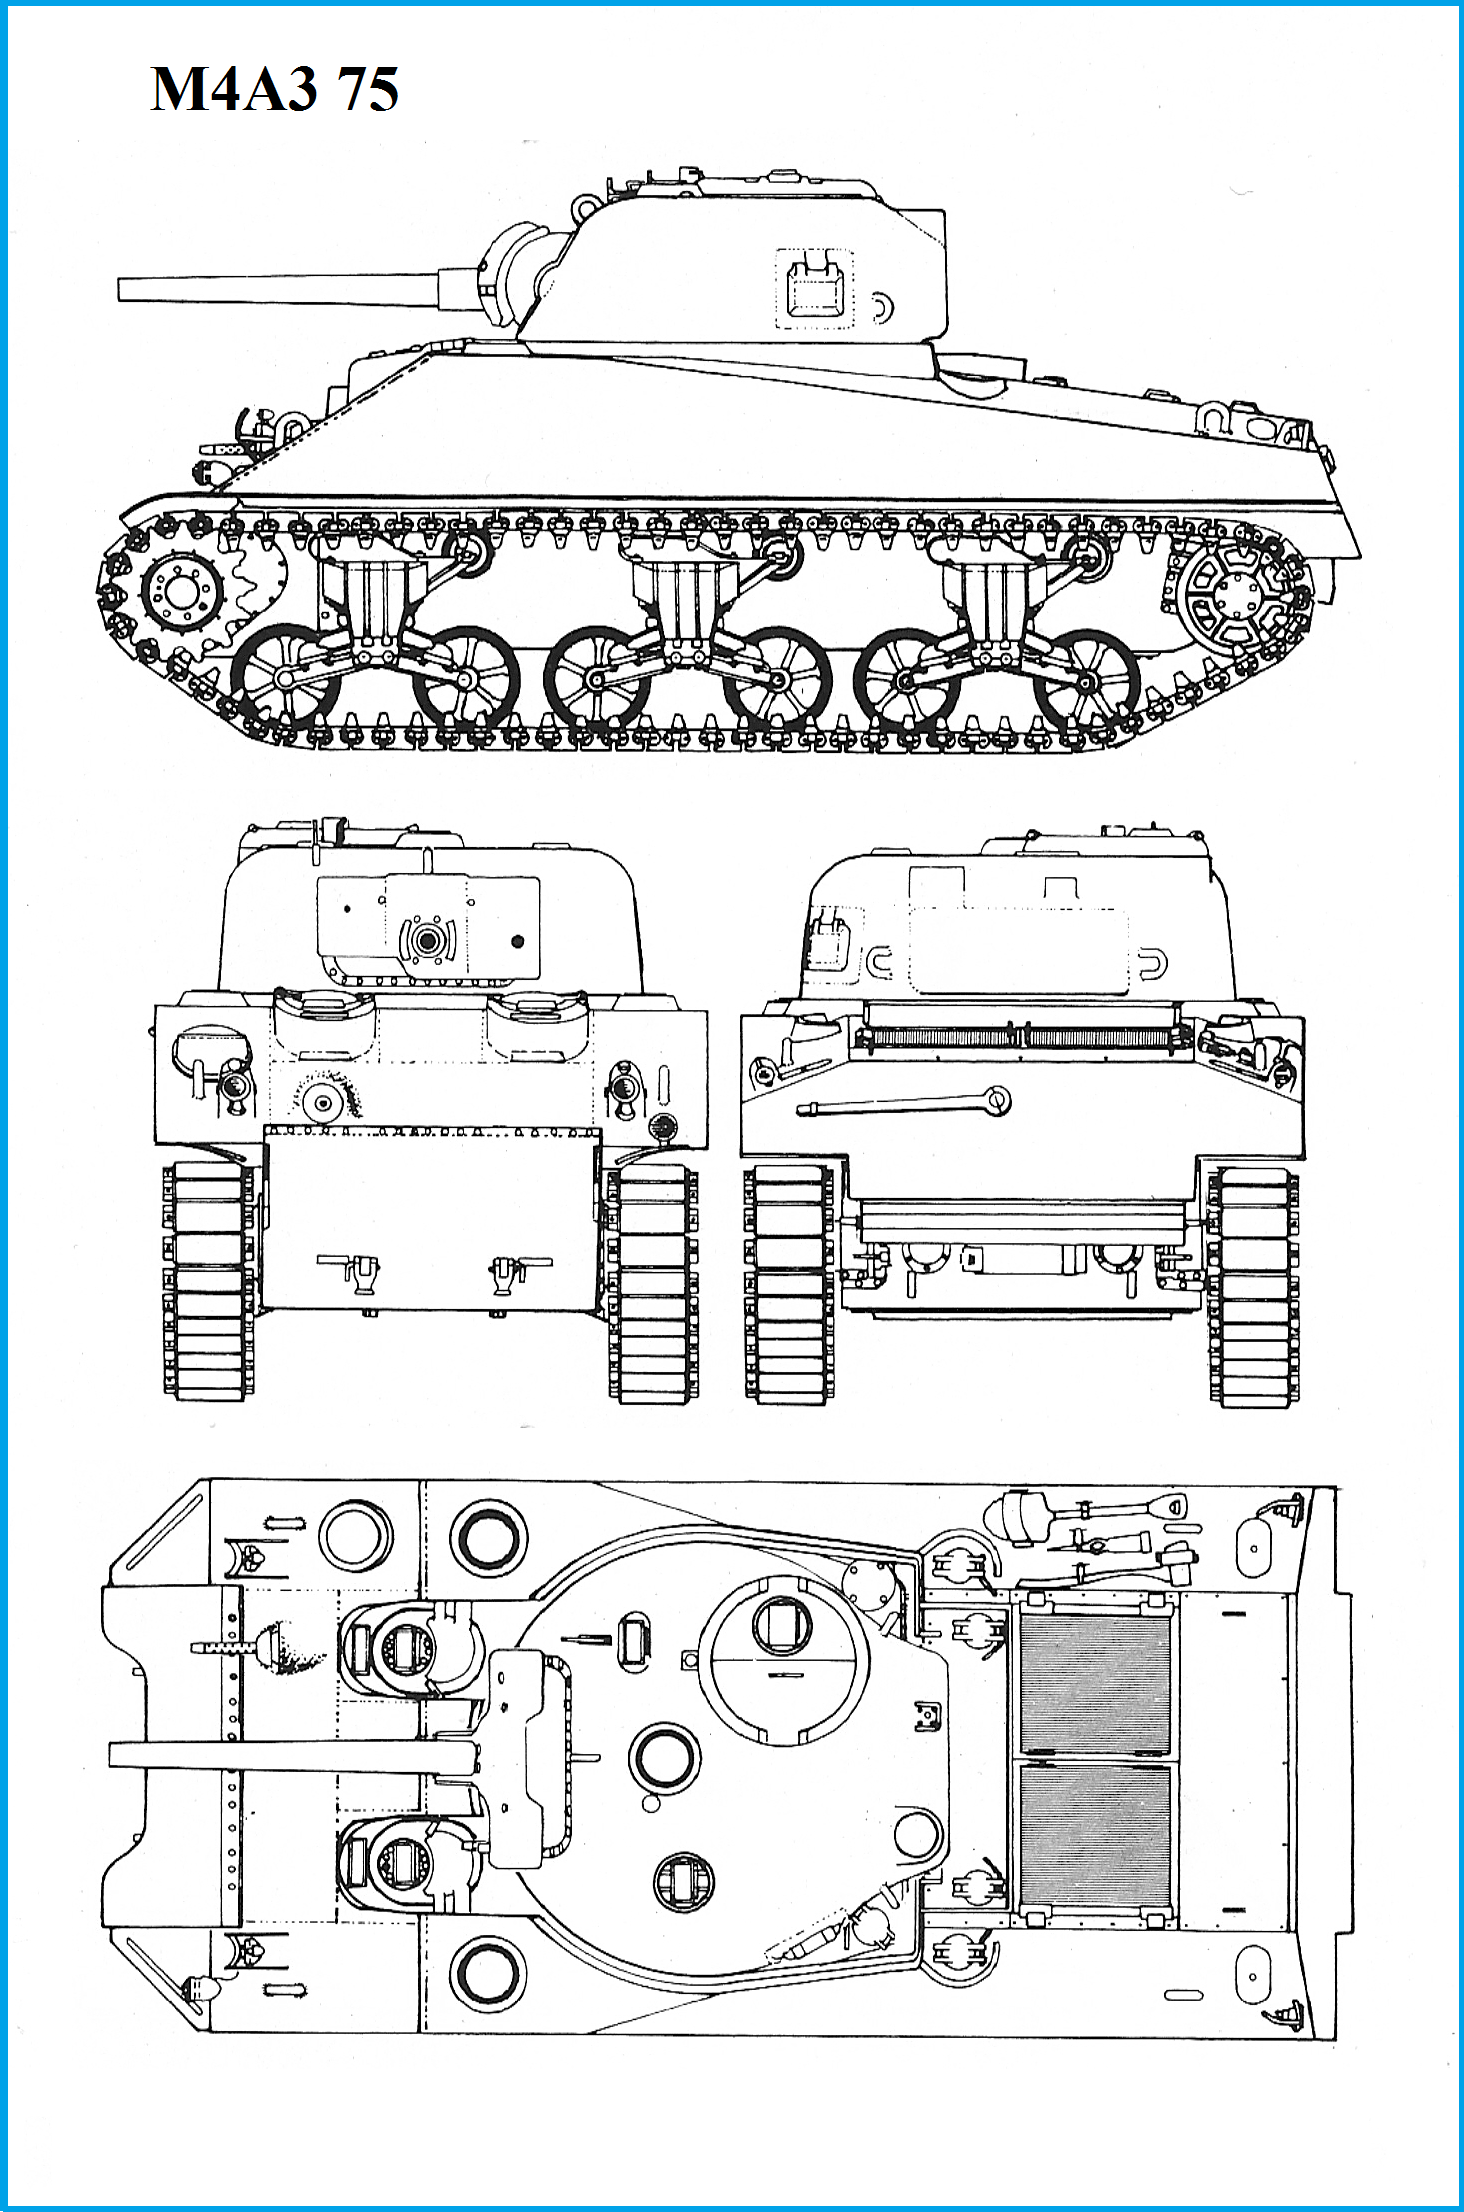 M4 Sherman Tank Blueprints